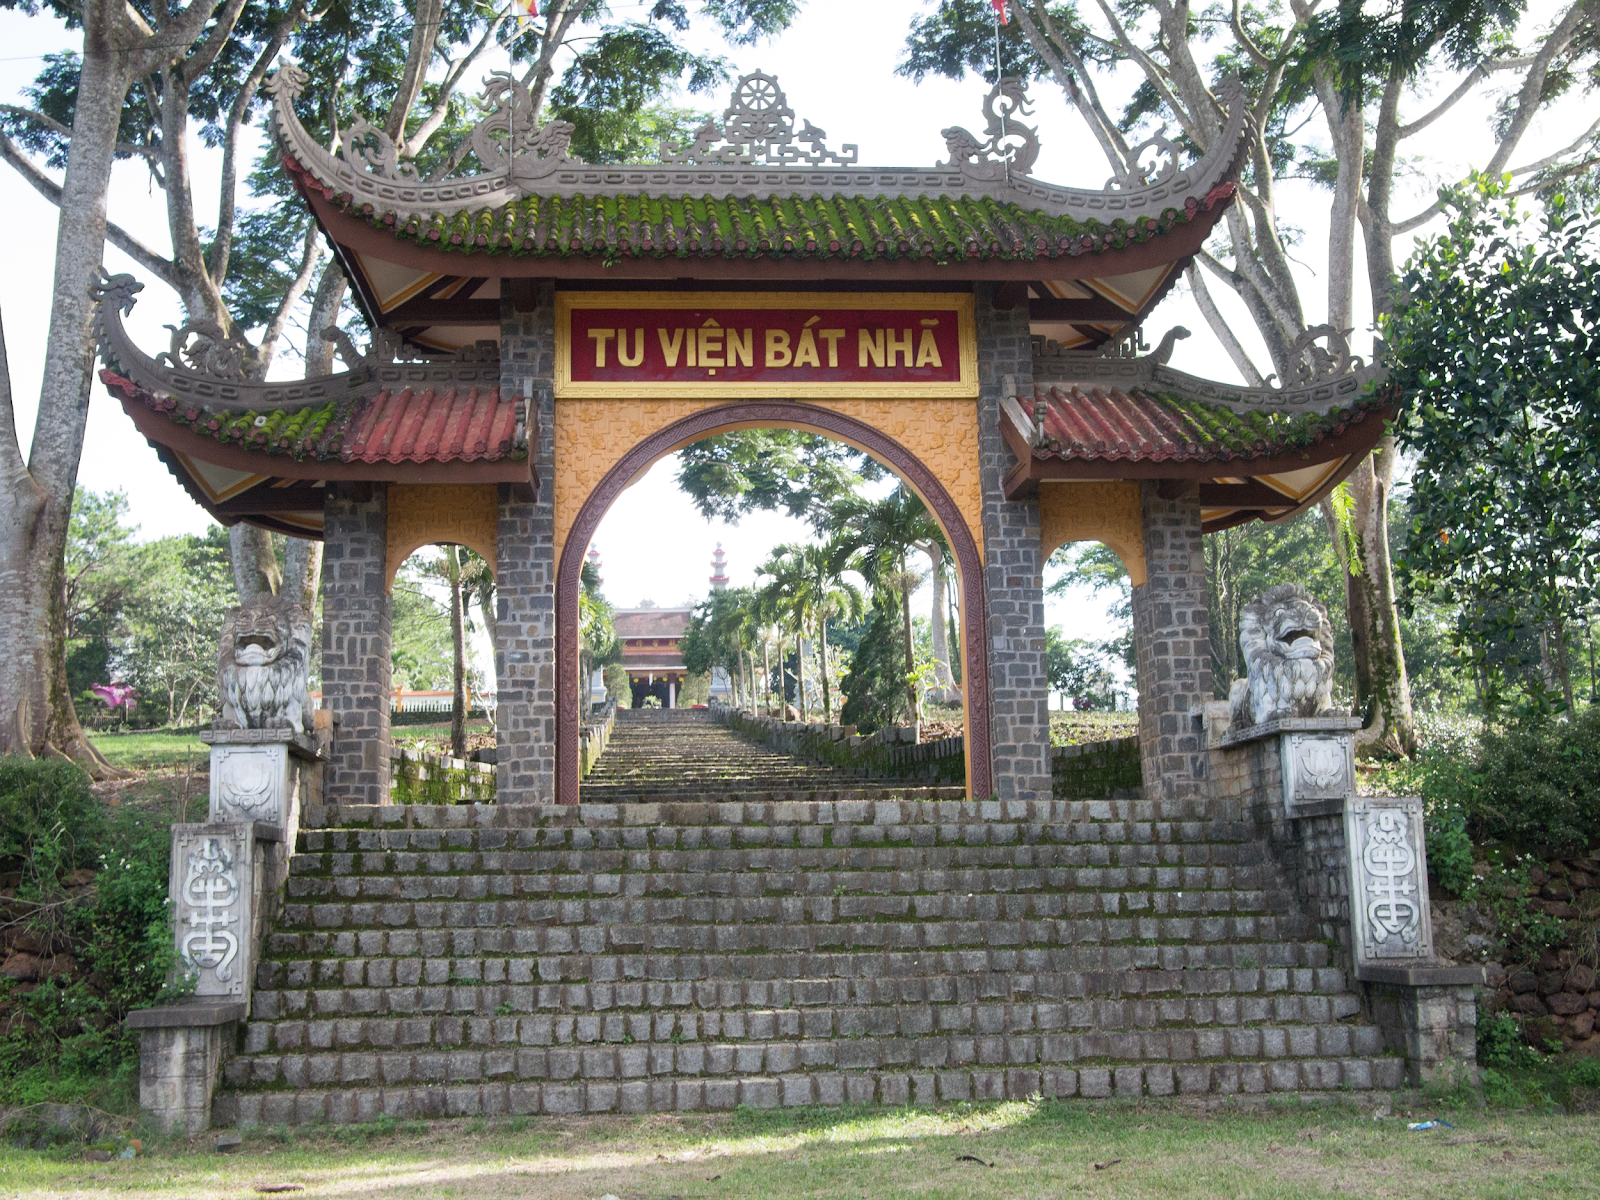 Tu viện Bát Nhã mang những nét uy nghiêm, hoang sơ và cổ kính (Nguồn upload.wikimedia.org)